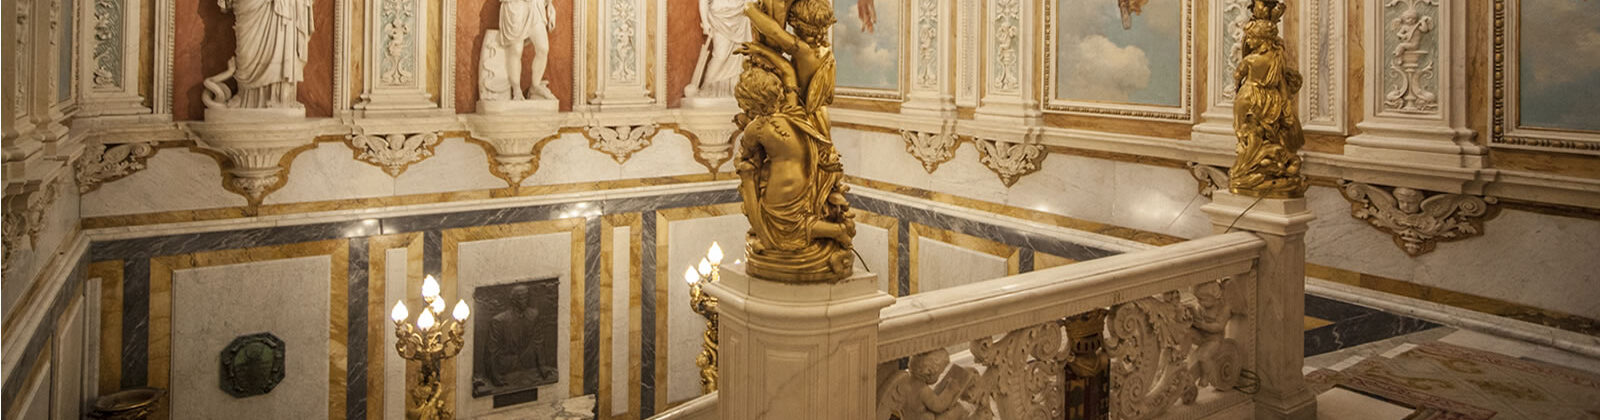 Vistas del interior del Palacio de Santoña, parte superior de la escalera principal, donde se aprecian altos techos y esculturas y murales.